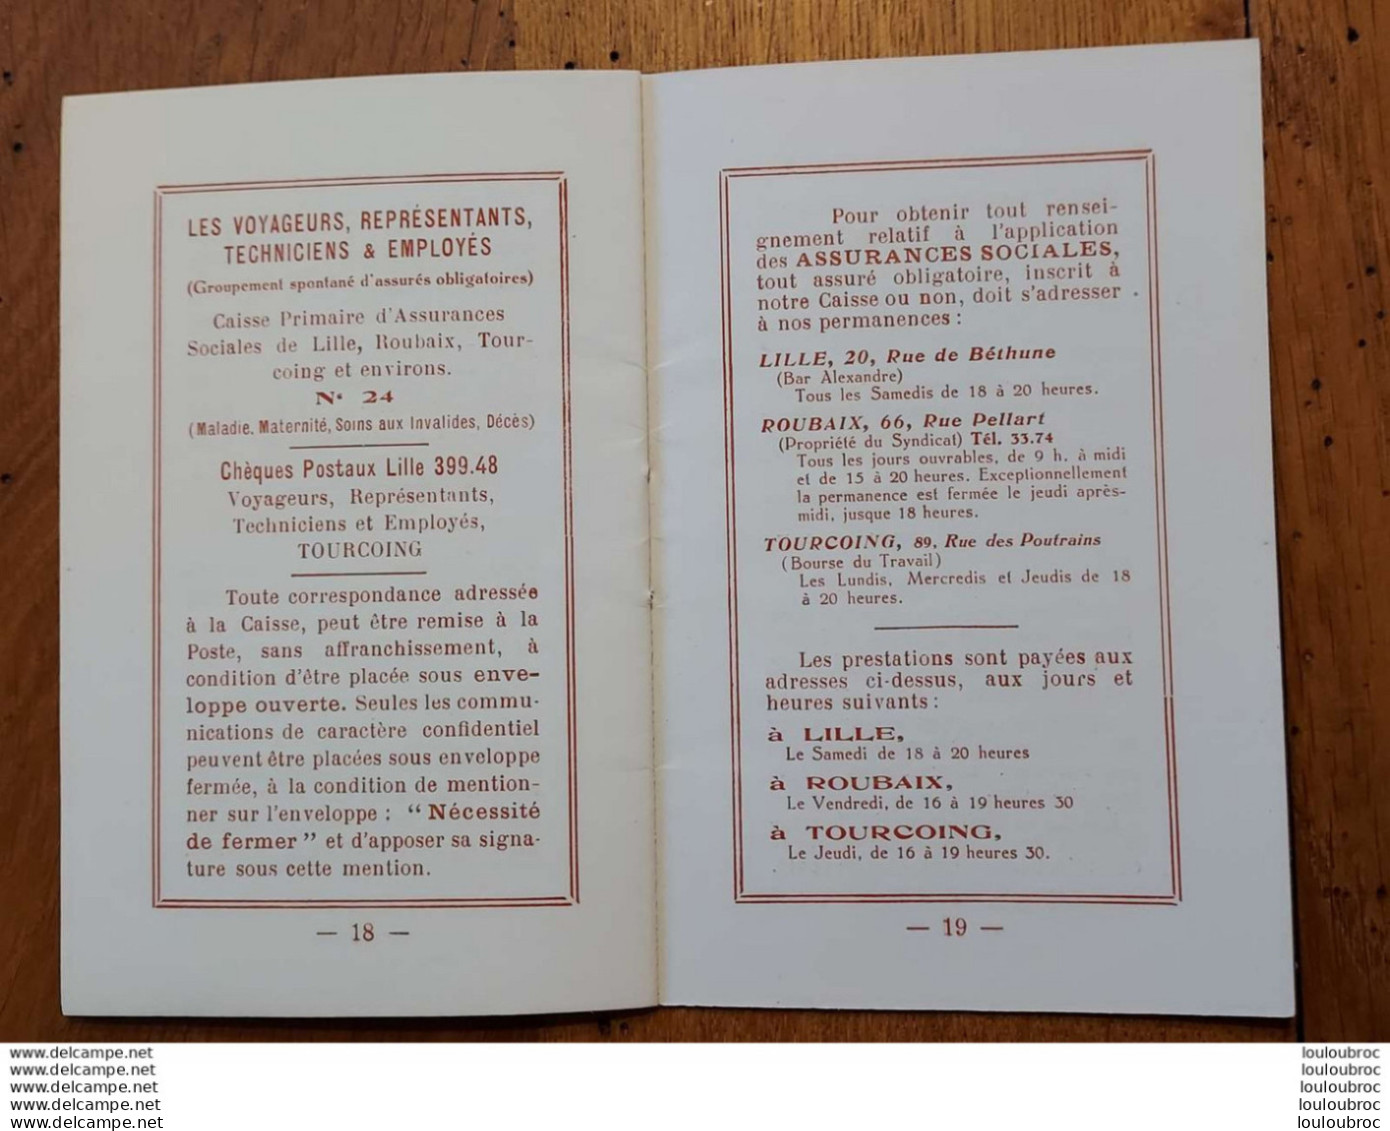 SYNDICAT DES EMPLOYES DE LILLE ROUBAIX TOURCOING ANNEE 1930 AVEC CALENDRIER LIVRET DE 20 PAGES PARFAIT ETAT